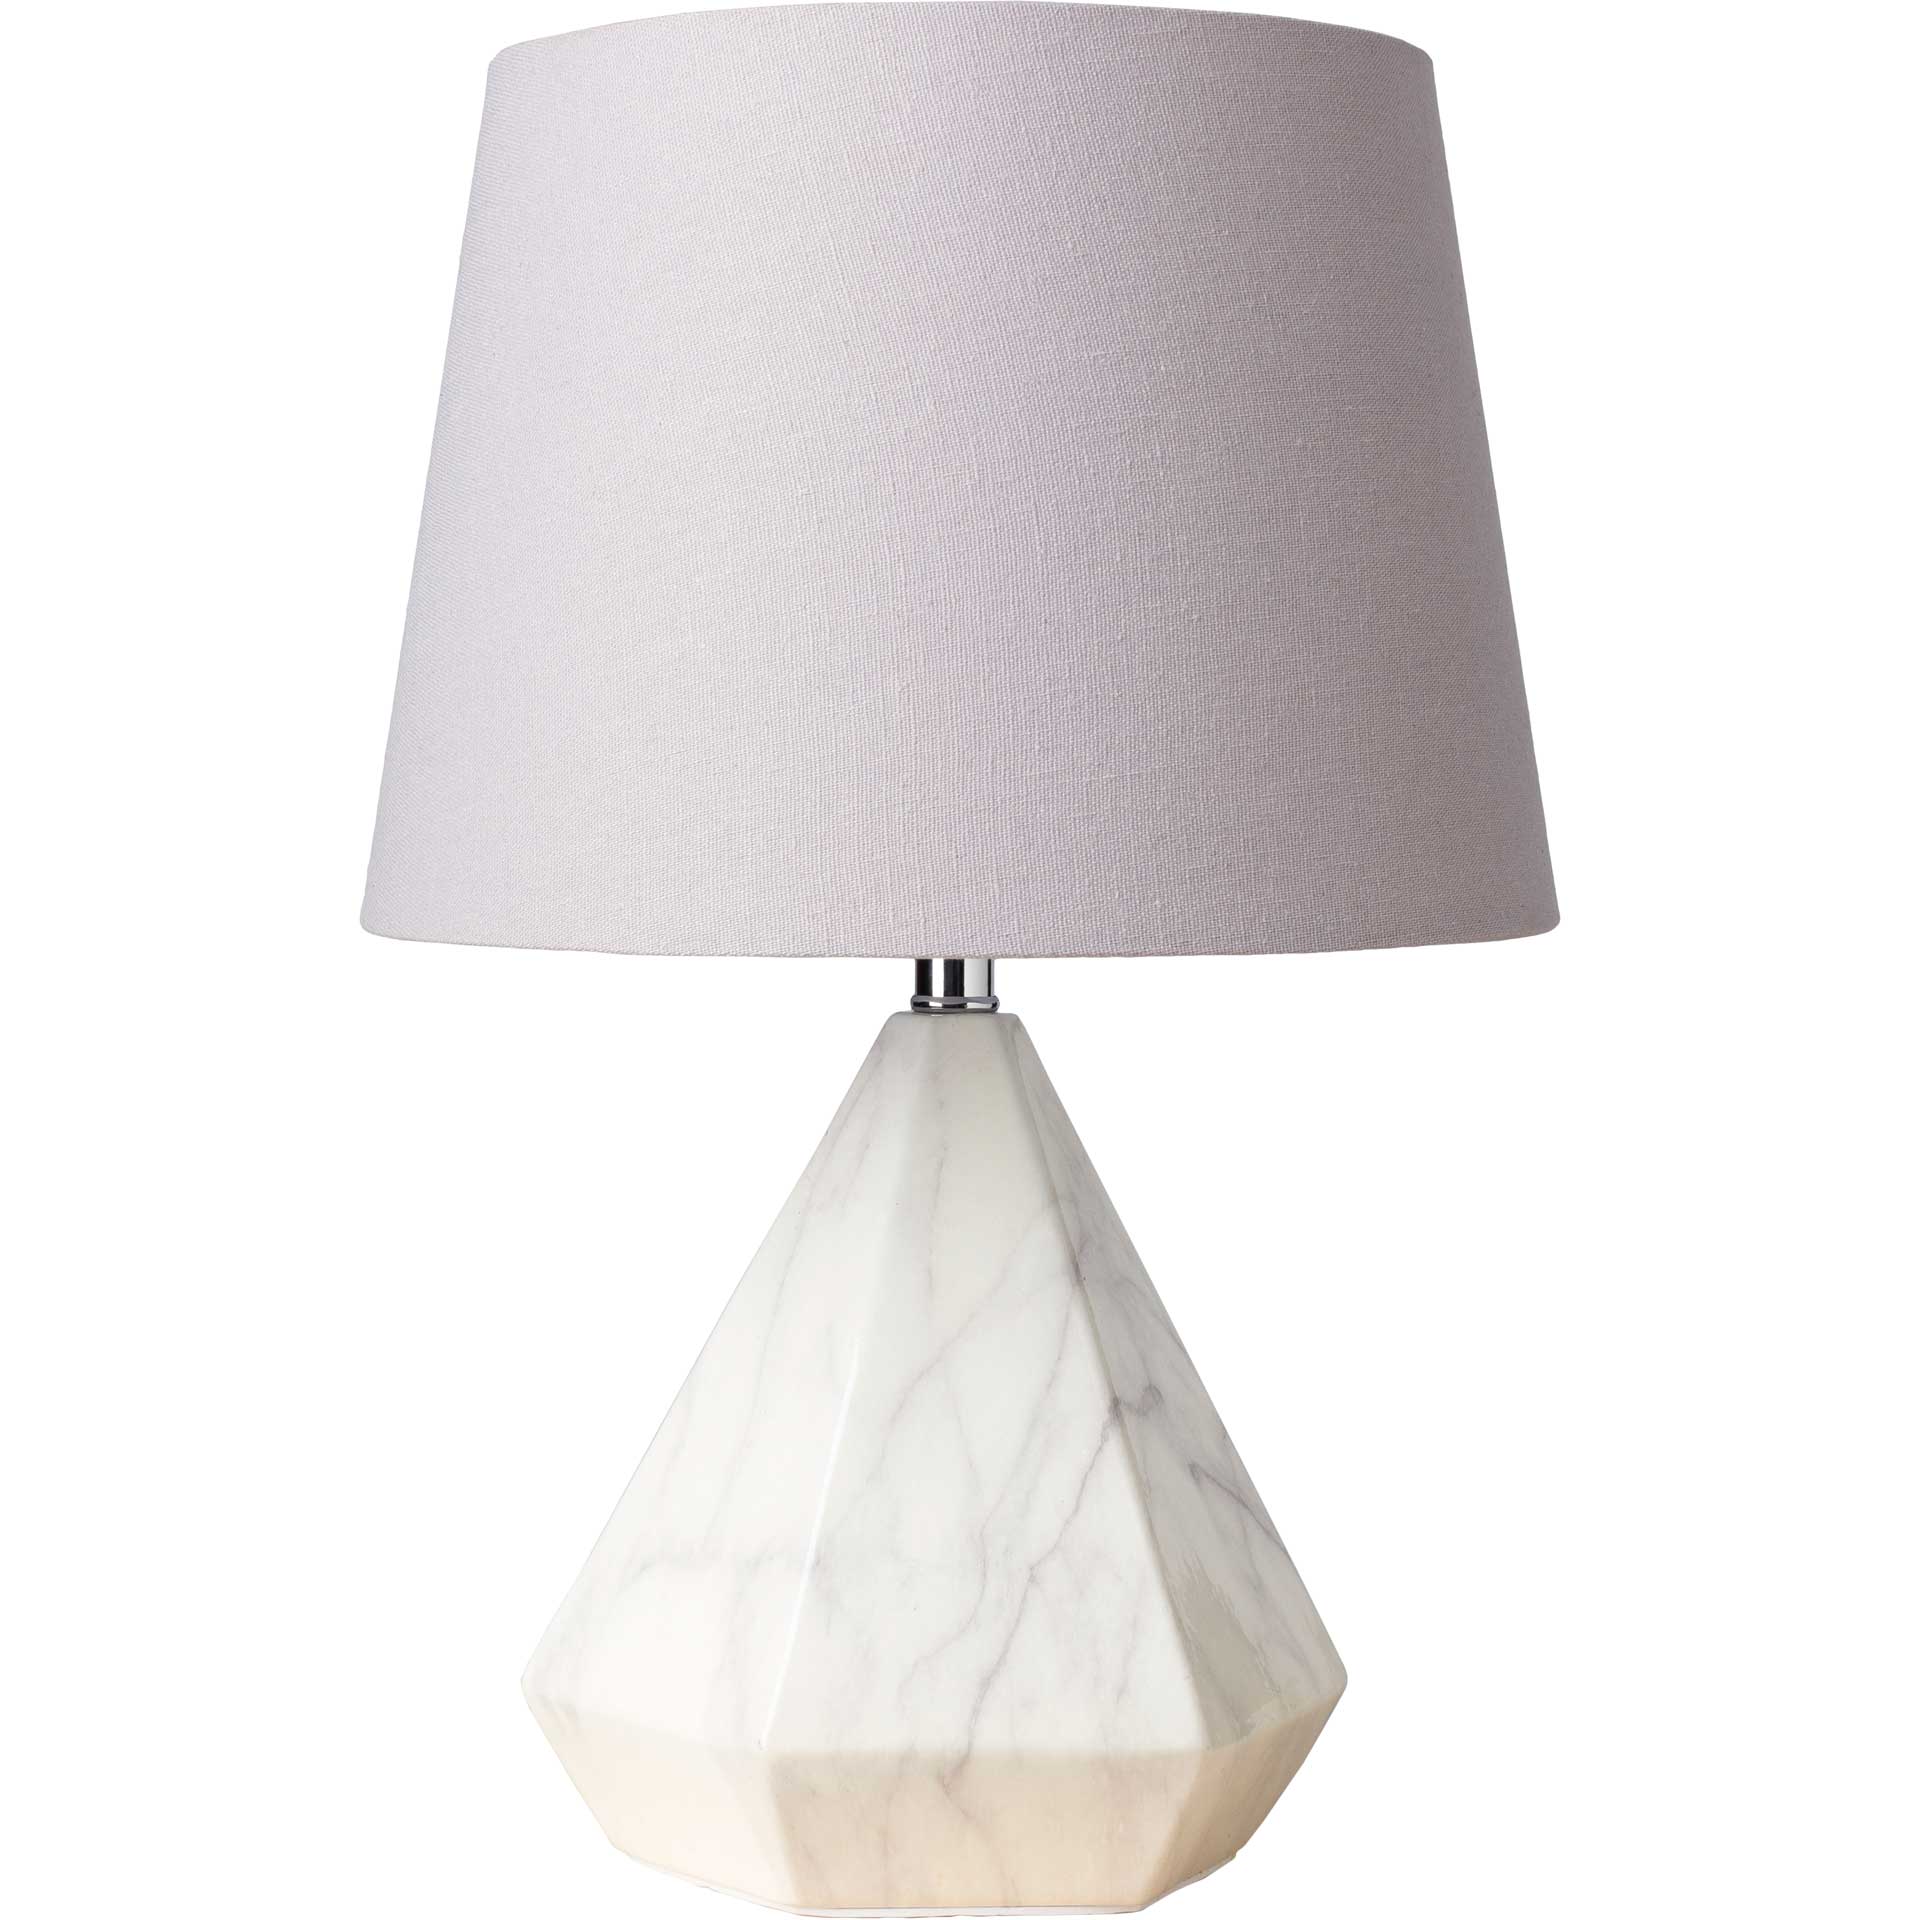 Presley Table Lamp Light Gray/White